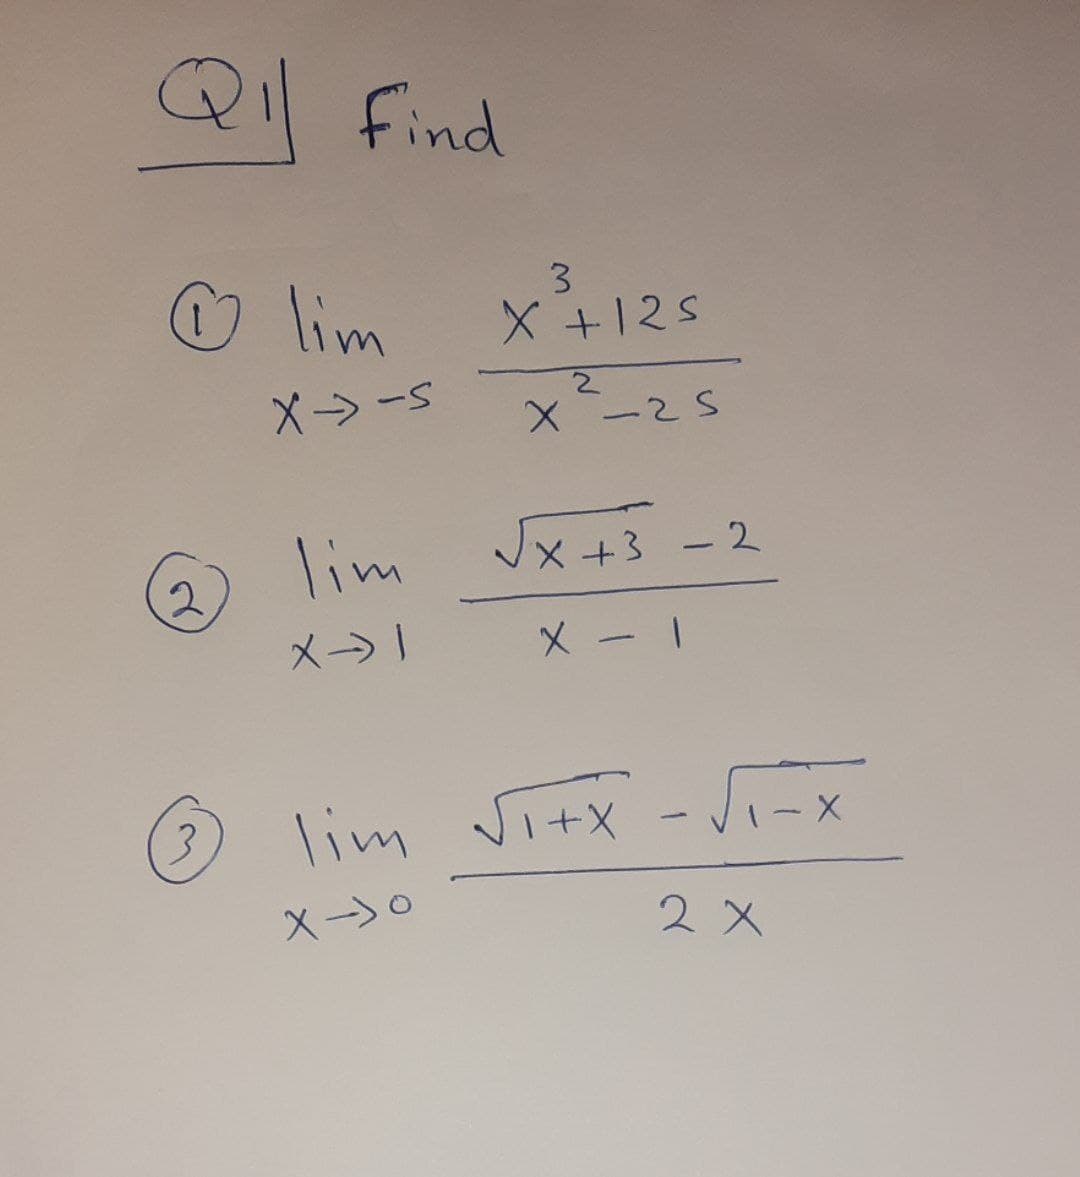 Q Find
lim x125
3
X->-
X -25
lim
JX +3
+3-2
メ→」
lim vitx -Ji- x
3.
VI-X
2 X
